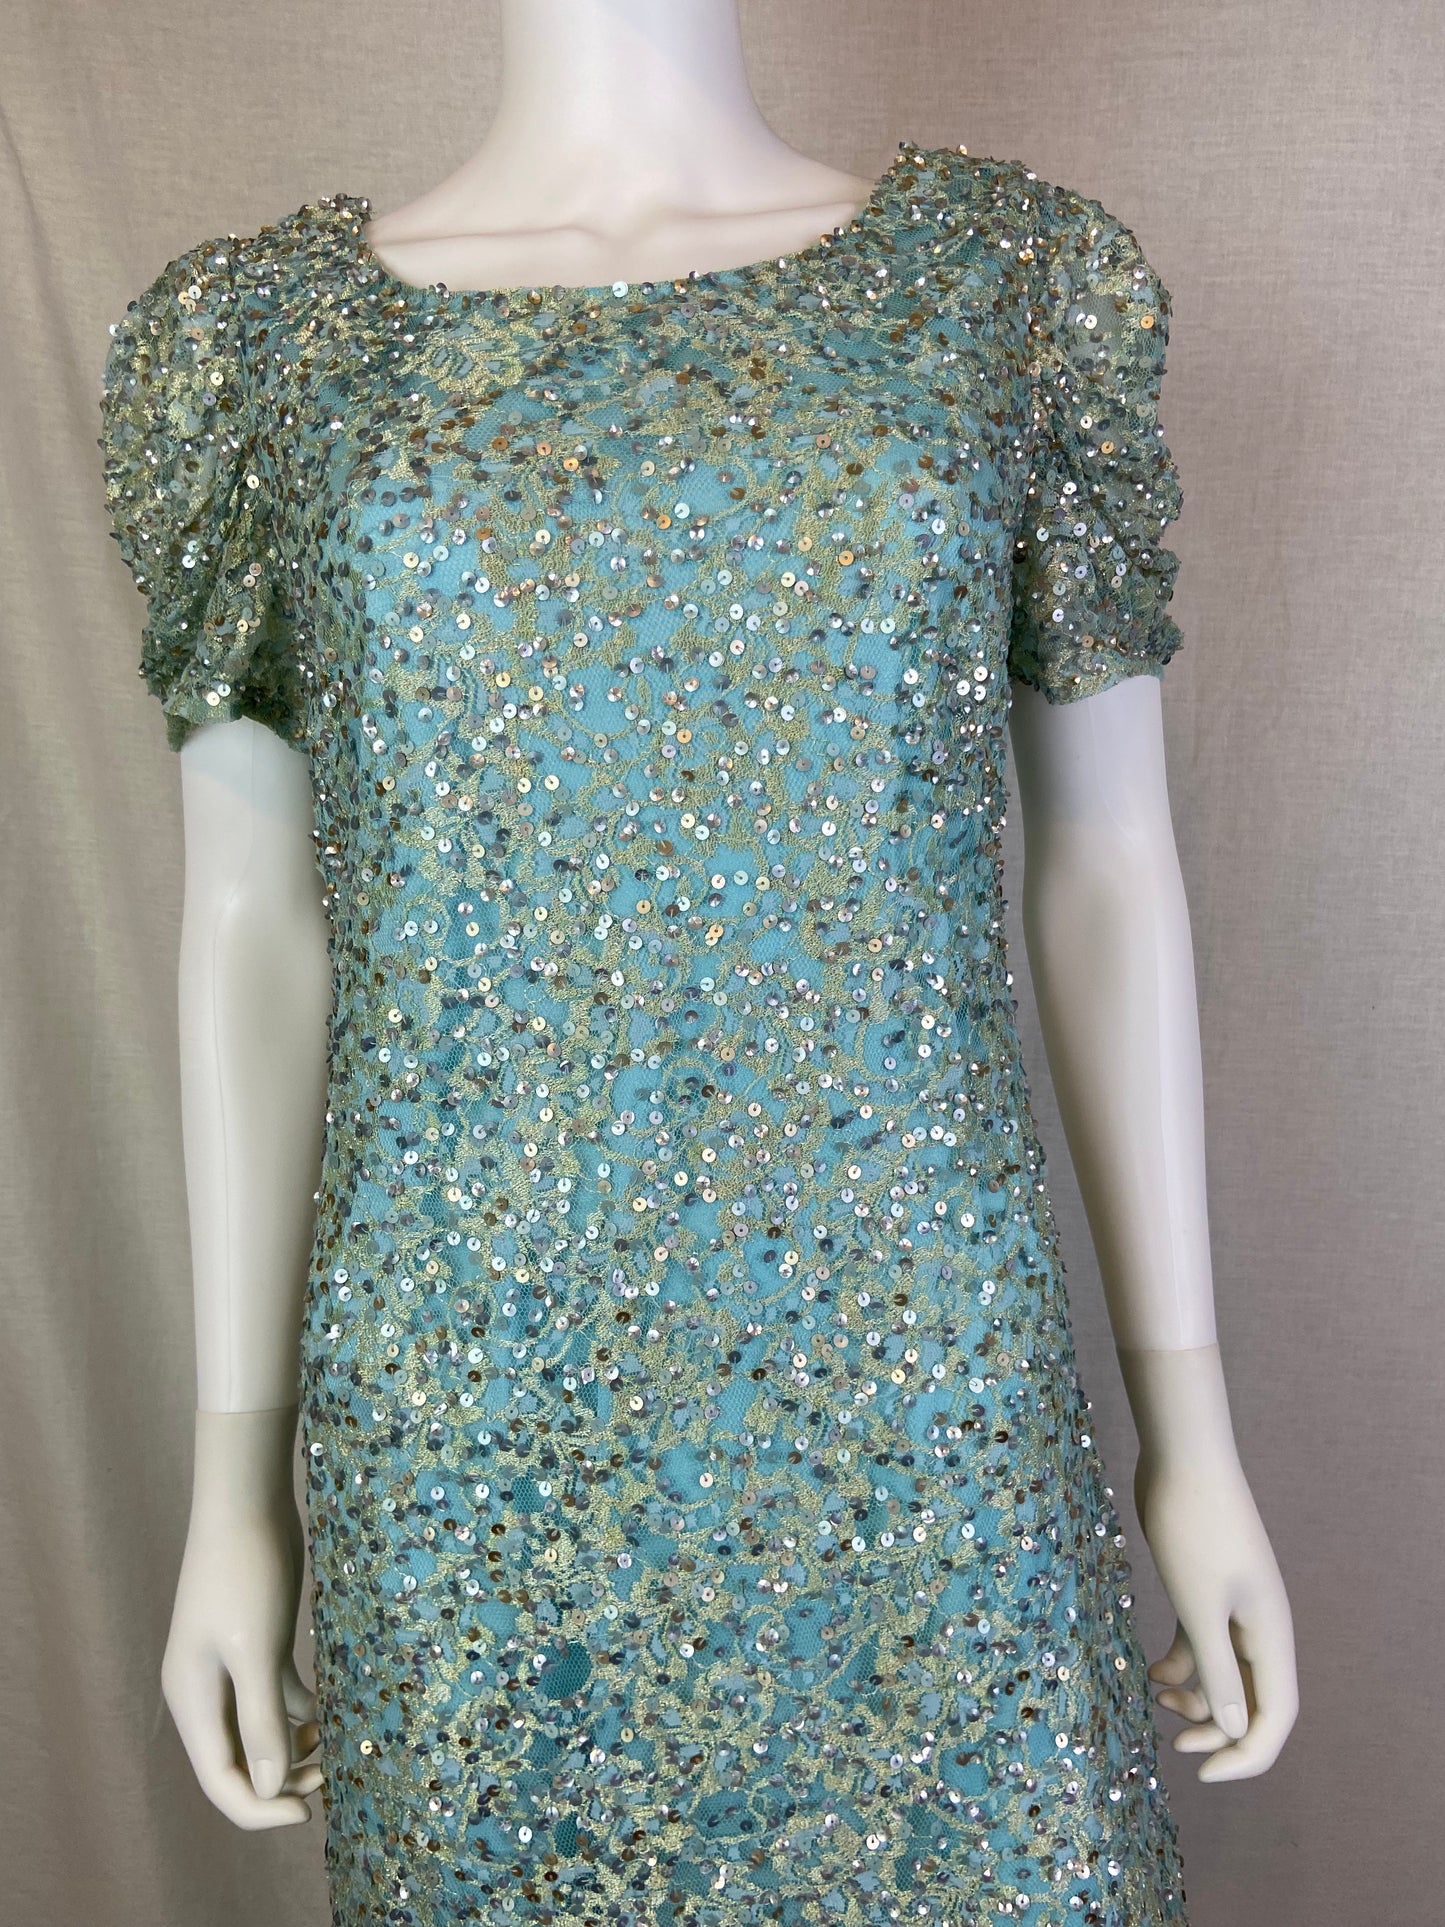 JS Collections Aqua Mint Blue Sequin Sheath Dress